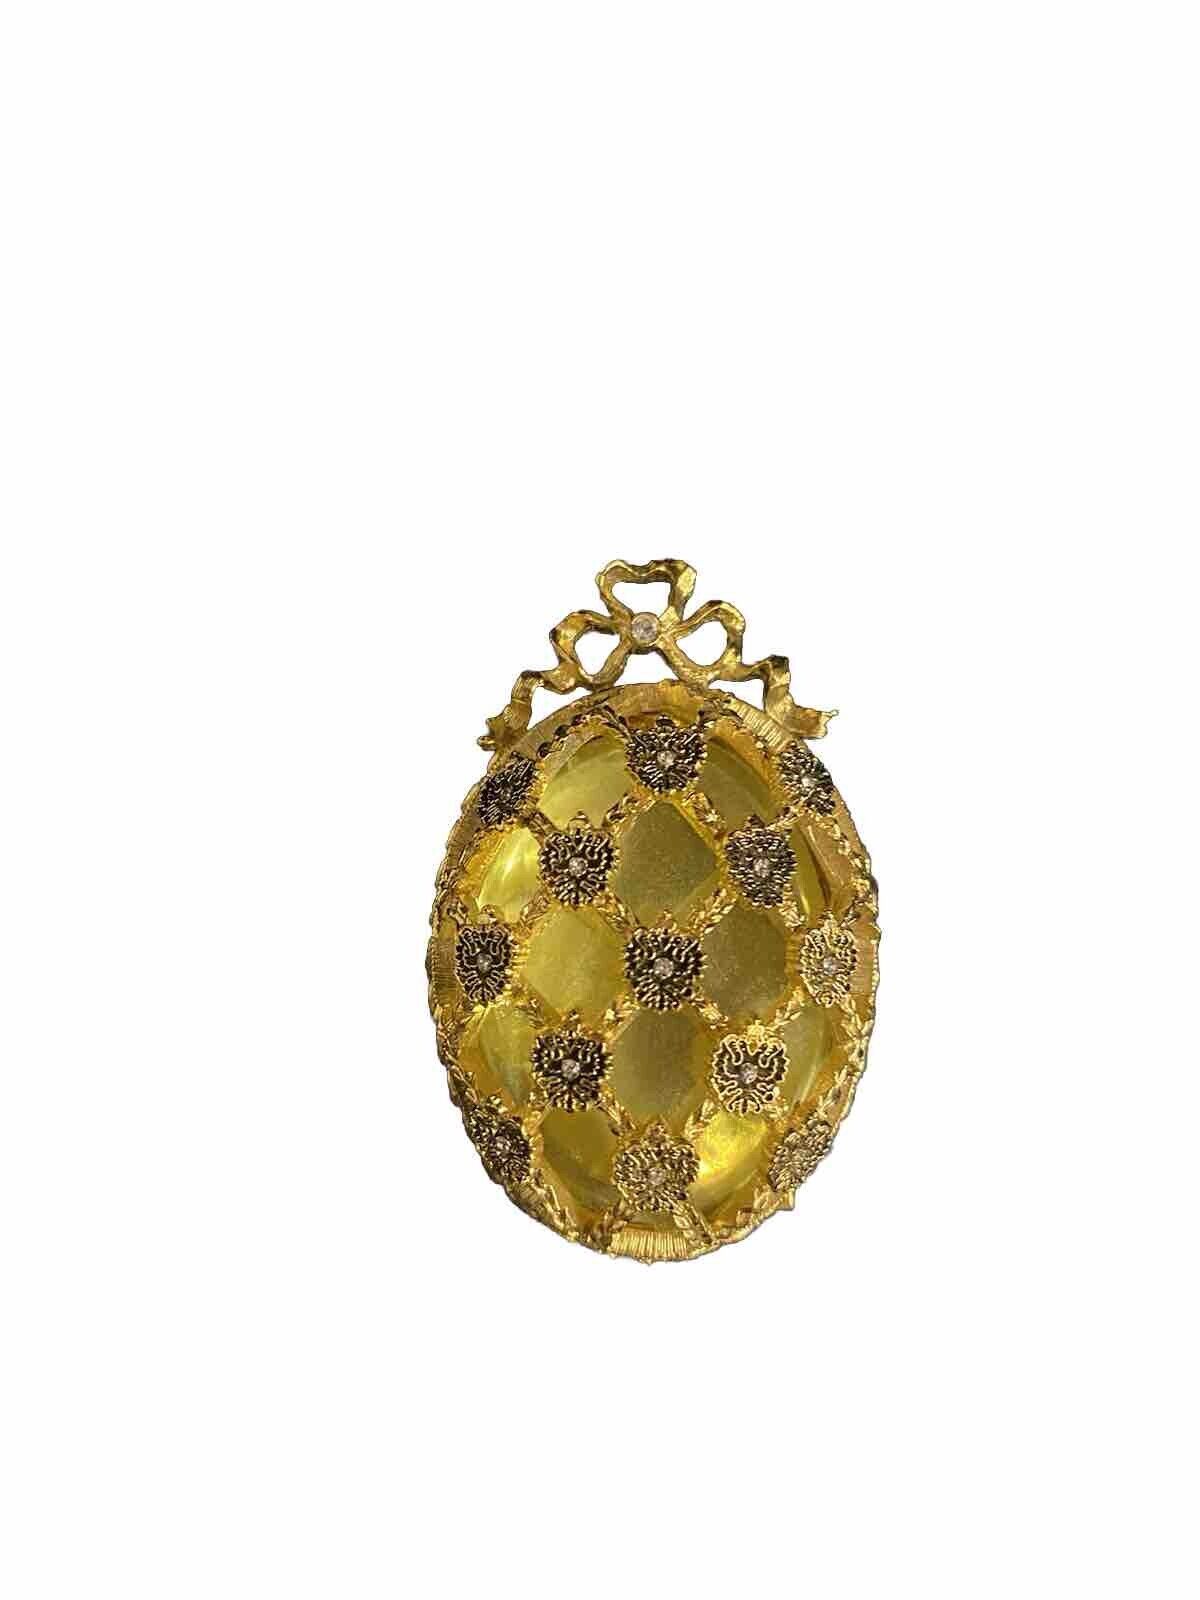 Rare Citrine Fabergé Half Egg Miniature Imperial Ornament